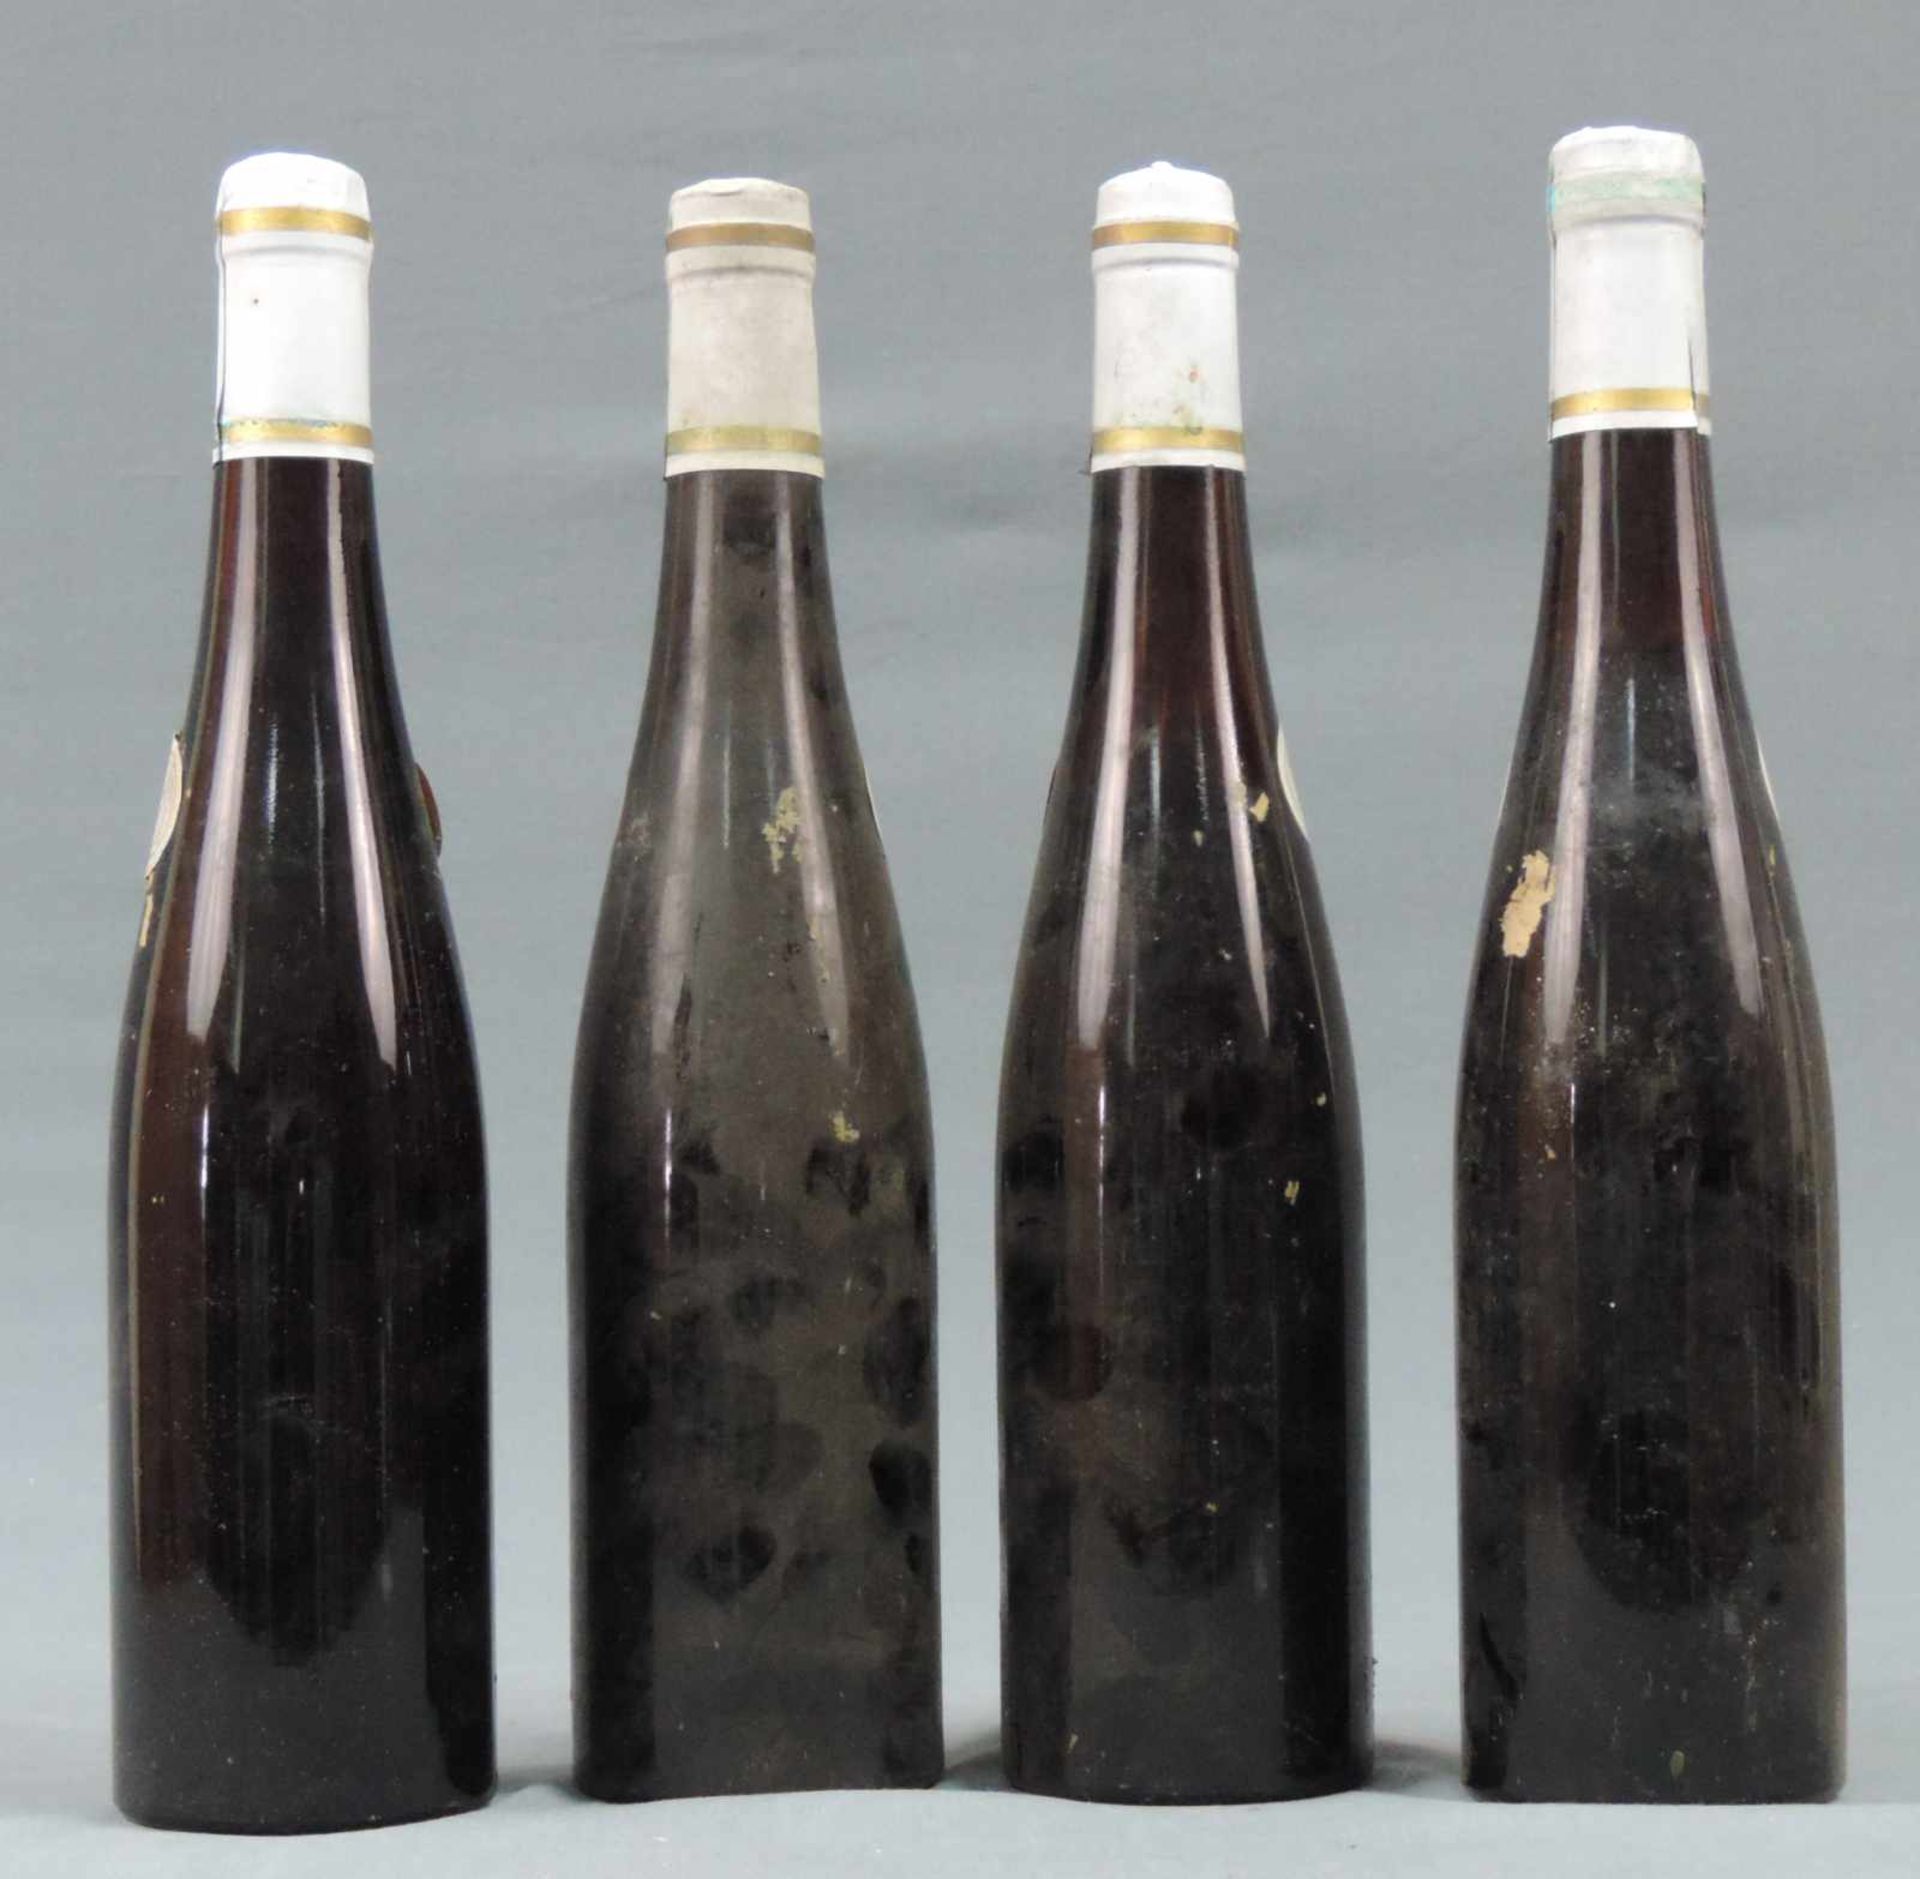 1948 Aßmannshäuser Höllenberg Spätburgunder Spätlese, Staatsweingüter. 4 ganze Flaschen 0,7 Liter - Image 8 of 9